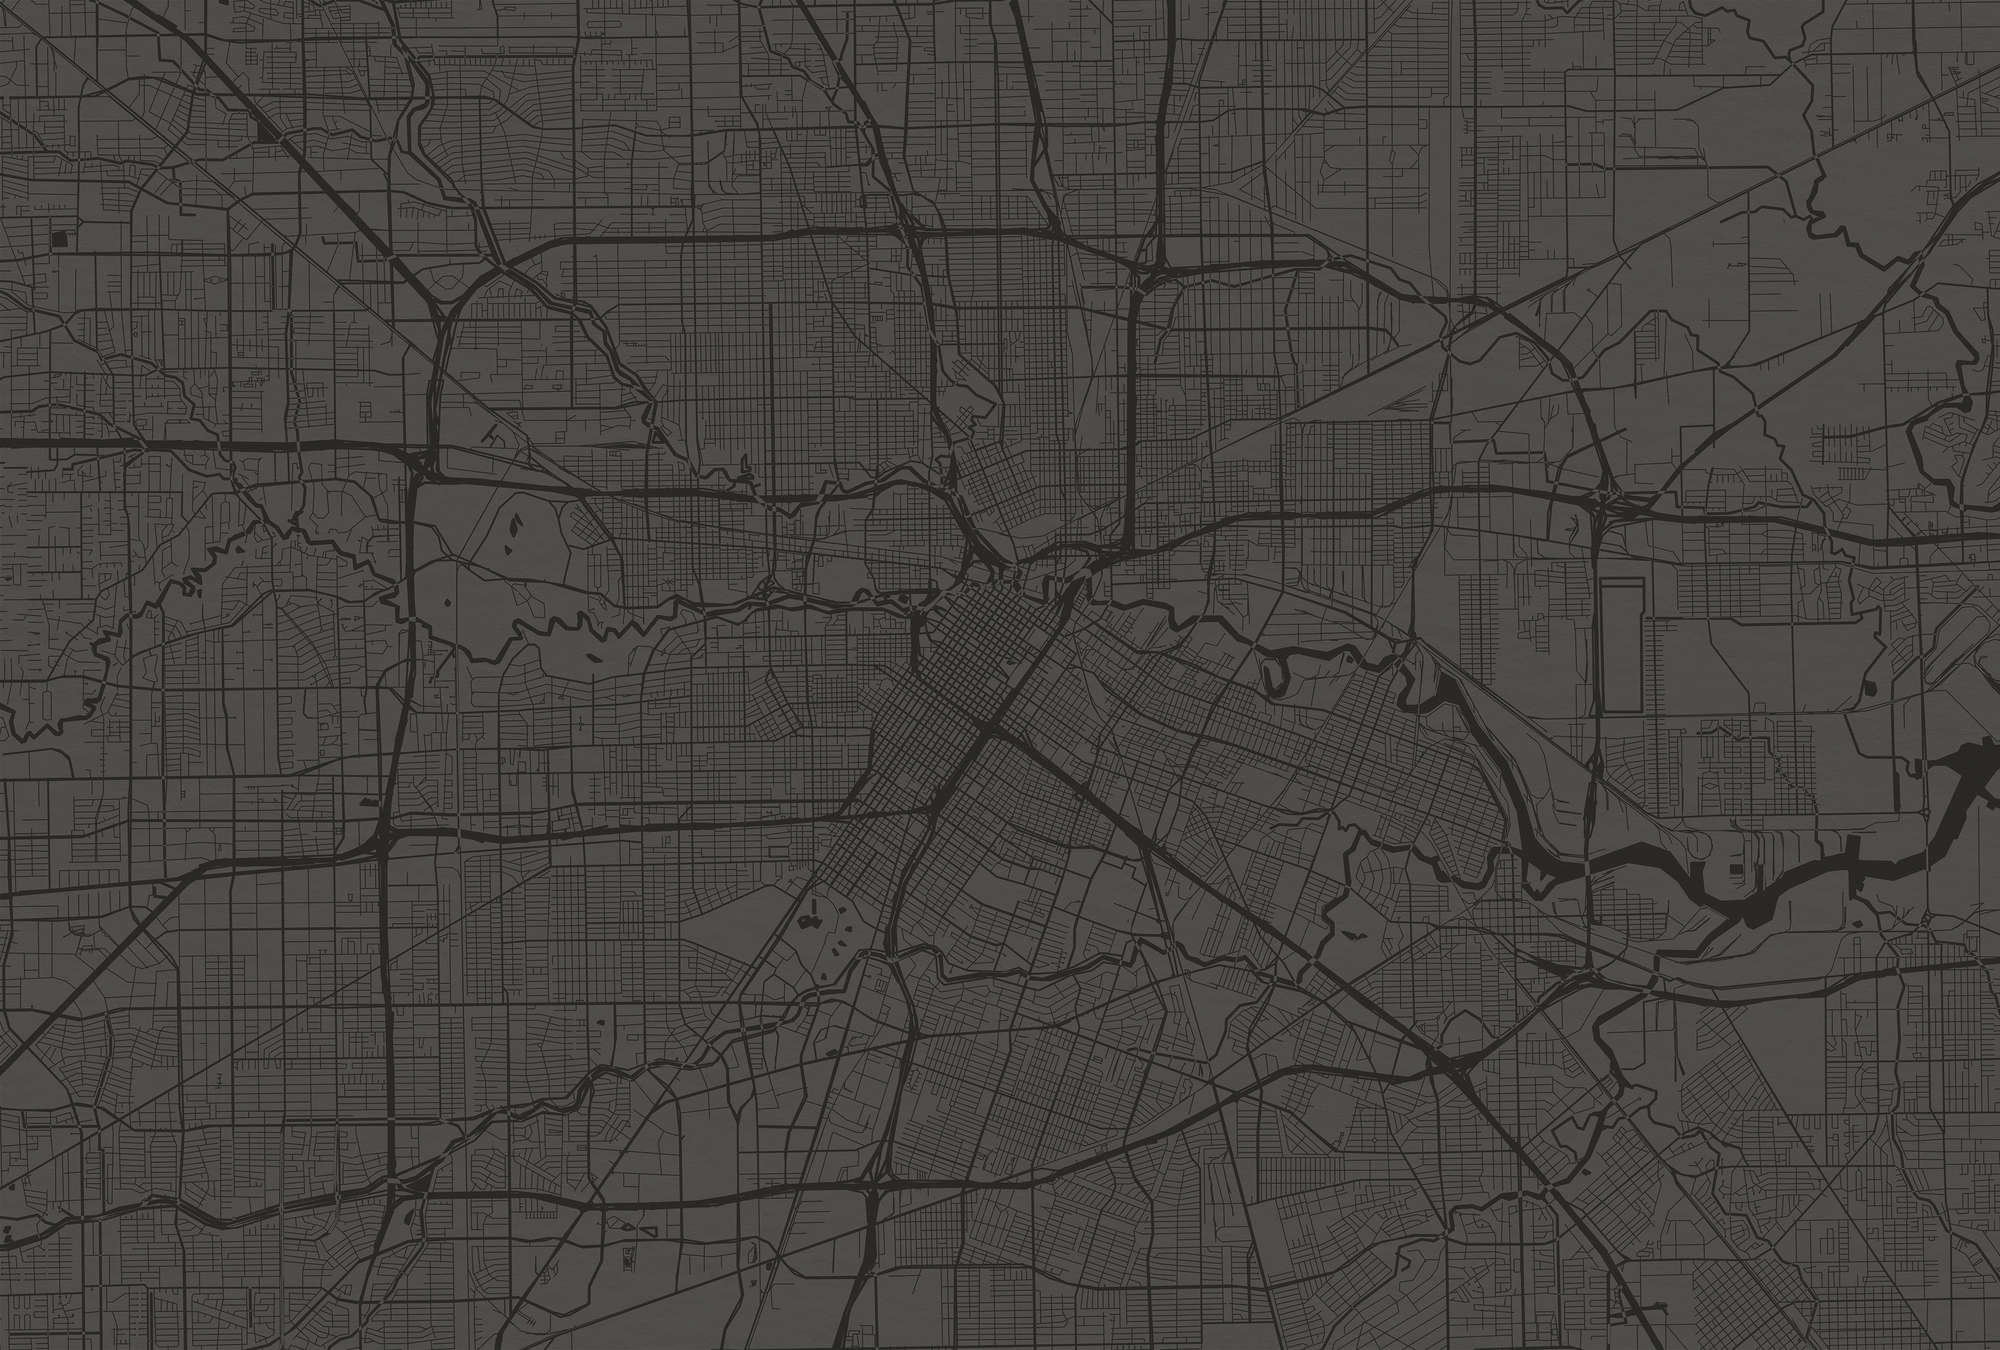             Fototapete Stadtkarte mit Straßenverlauf – Schwarz
        